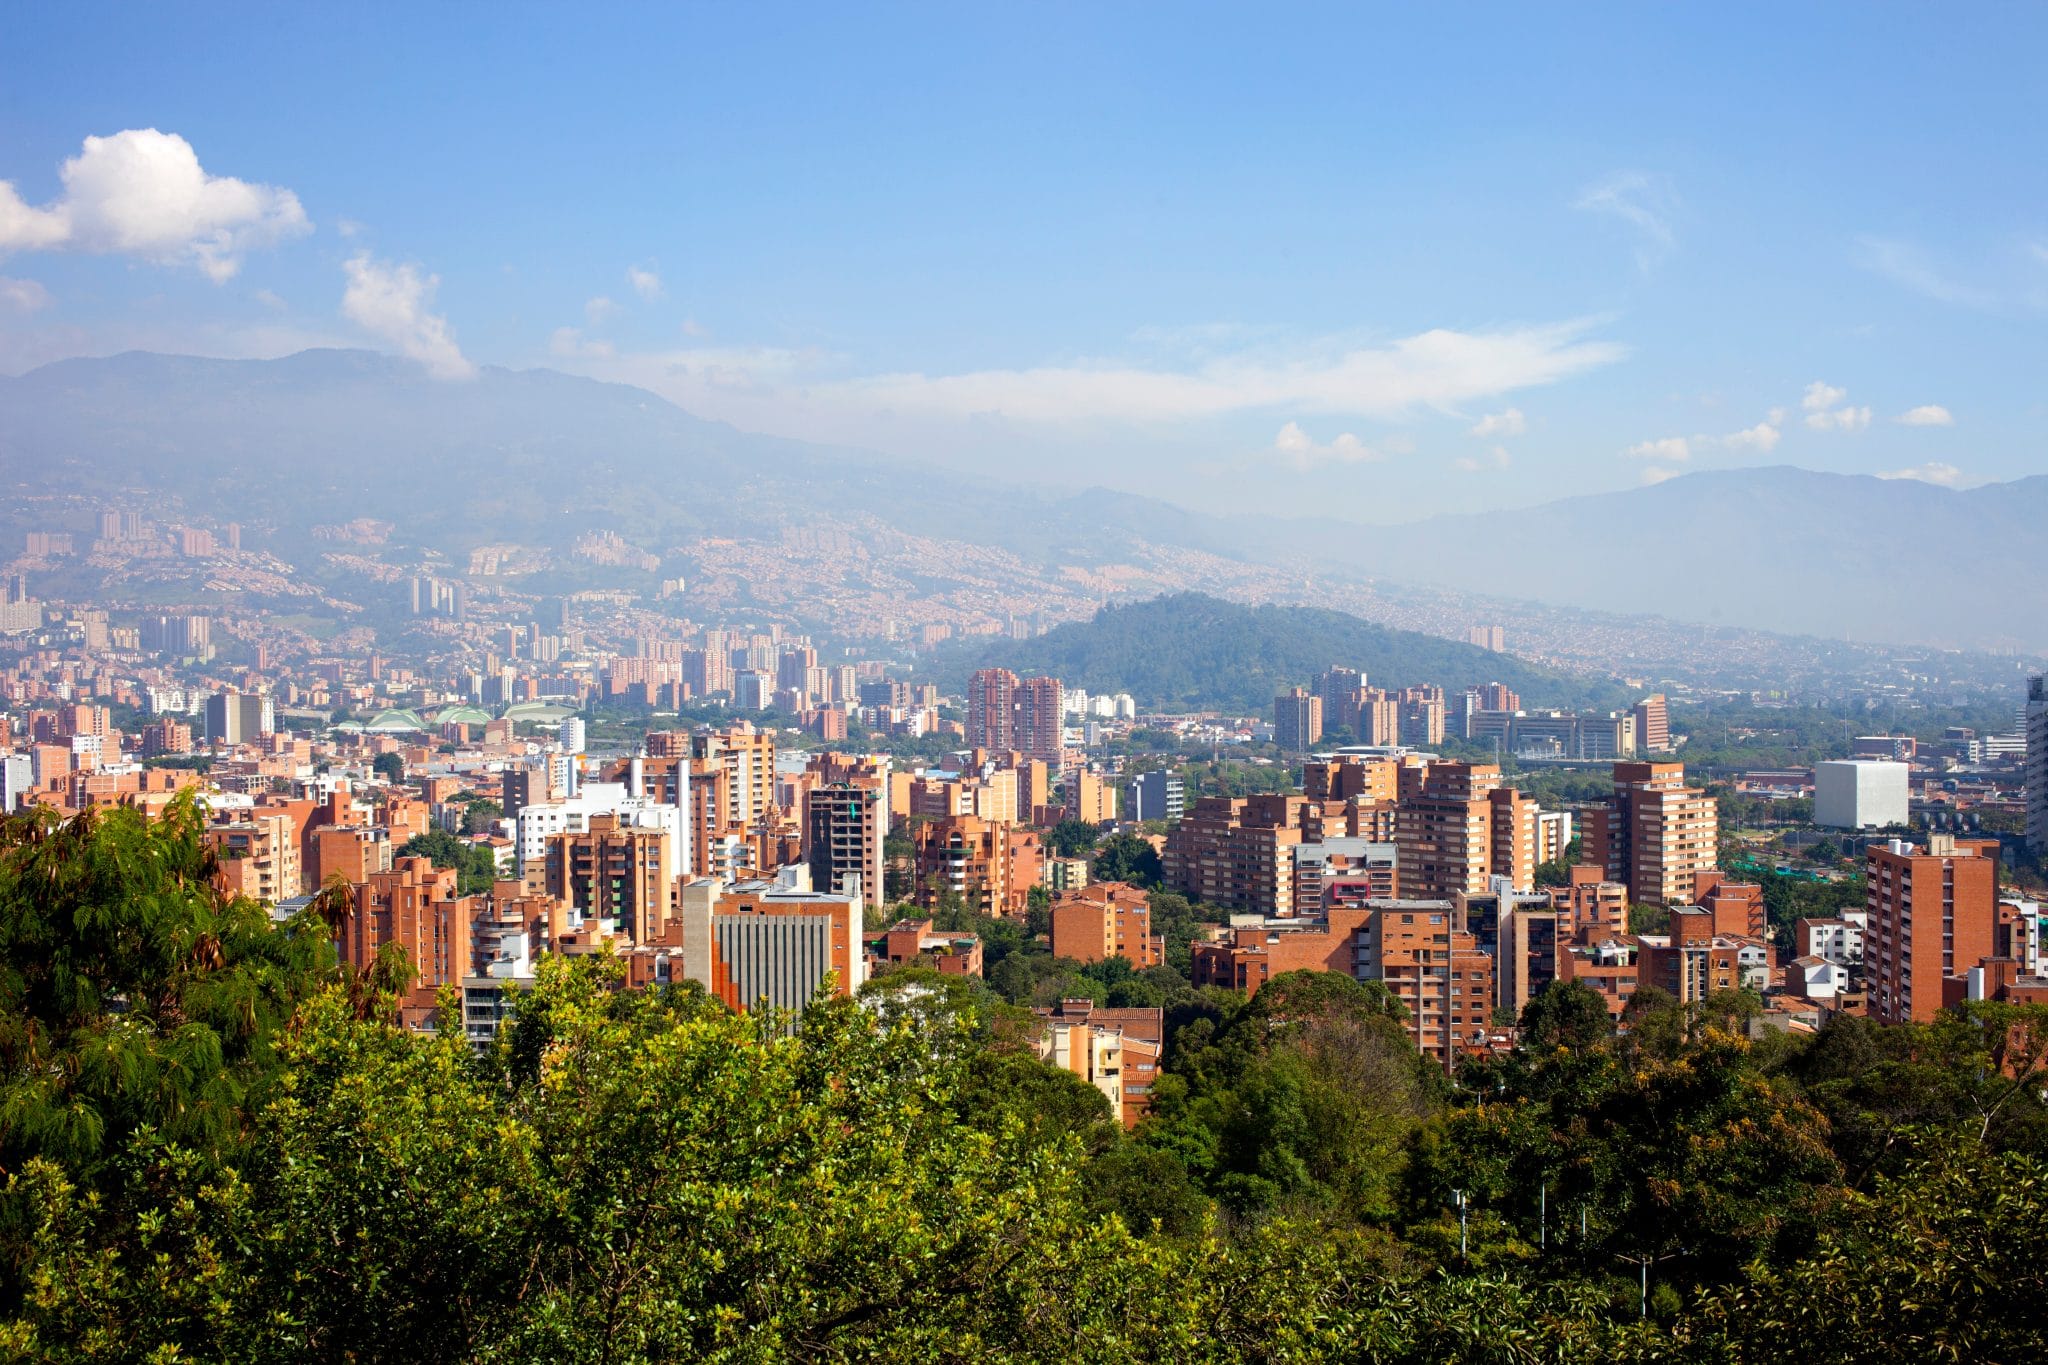 Conozca Todo Sobre La Comuna 1 Un Barrio Popular De Medellín